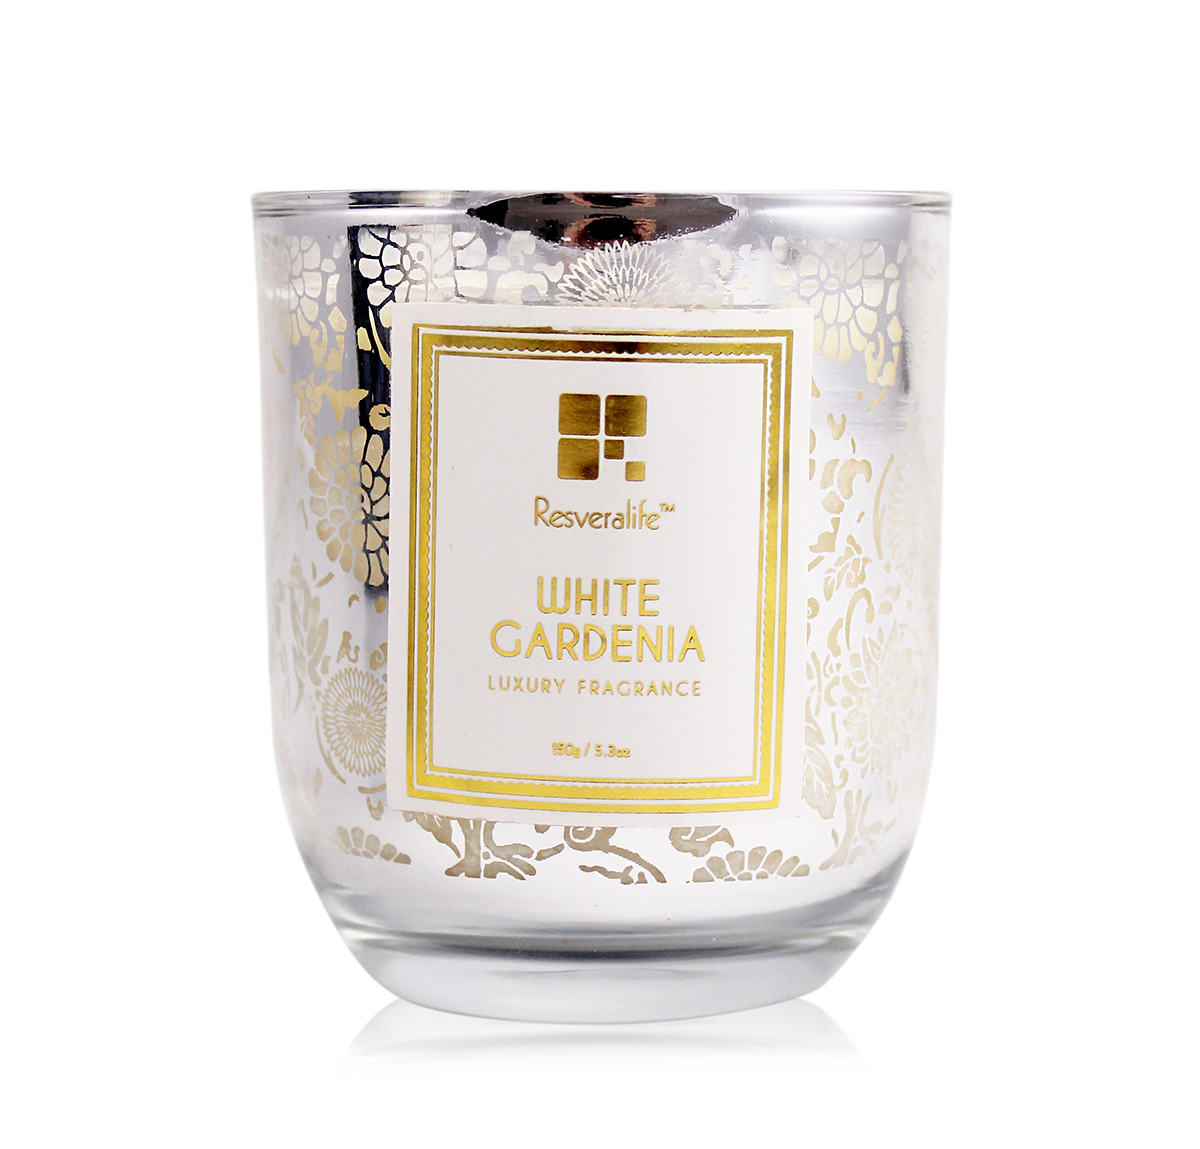 Resveralife White Gardenia Candle